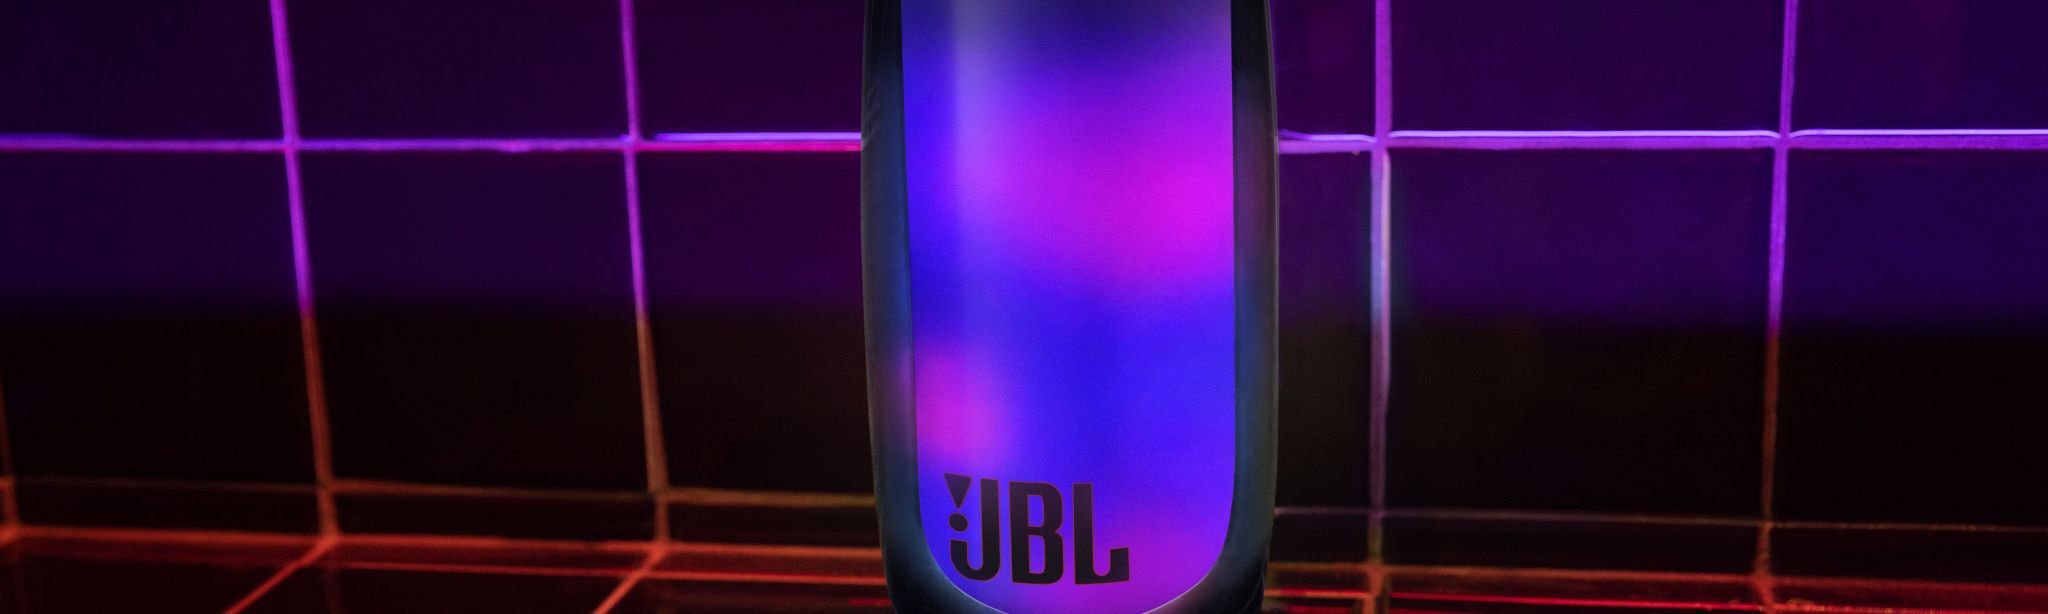 Este altavoz Bluetooth JBL con 20 horas de autonomía y resistencia al agua  es ideal para llevártelo a la piscina y está rebajado